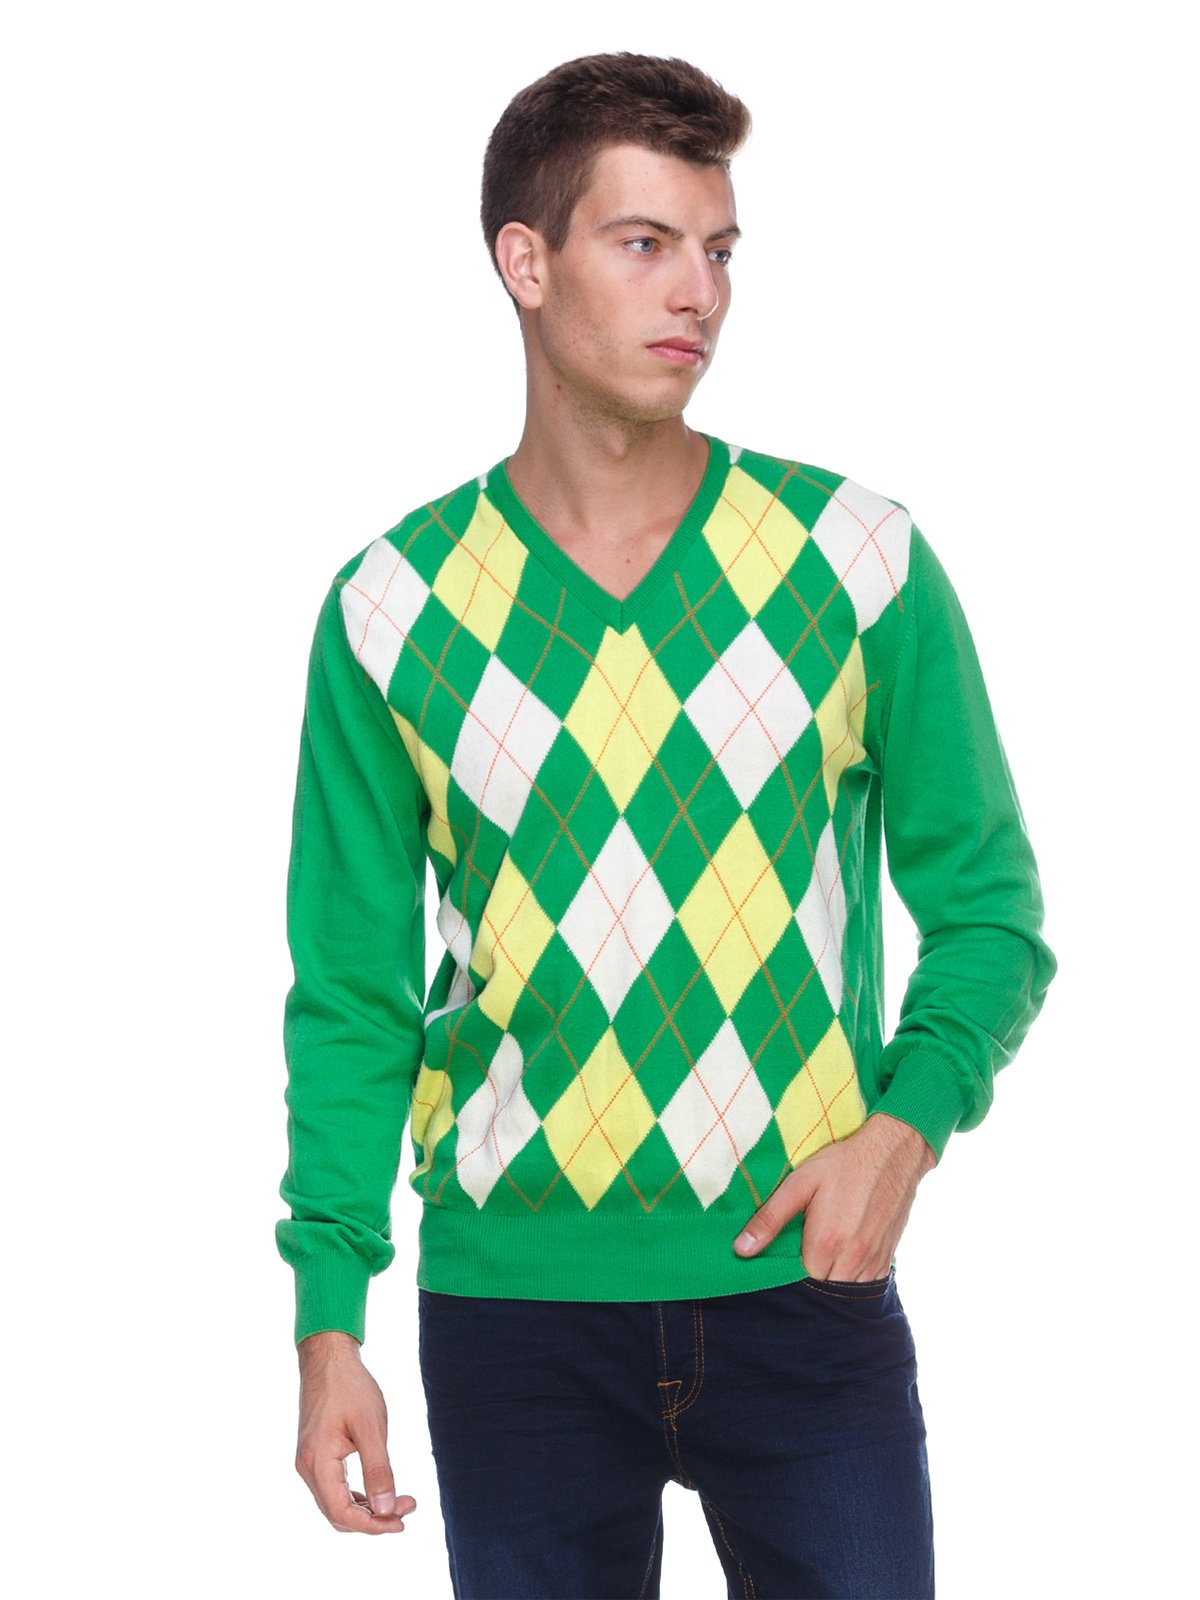 Зеленые свитеры мужские. Свитер с ромбами мужской. Джемпер с ромбами мужской. Свитер в ромбик мужской. Мужской пуловер с ромбами.